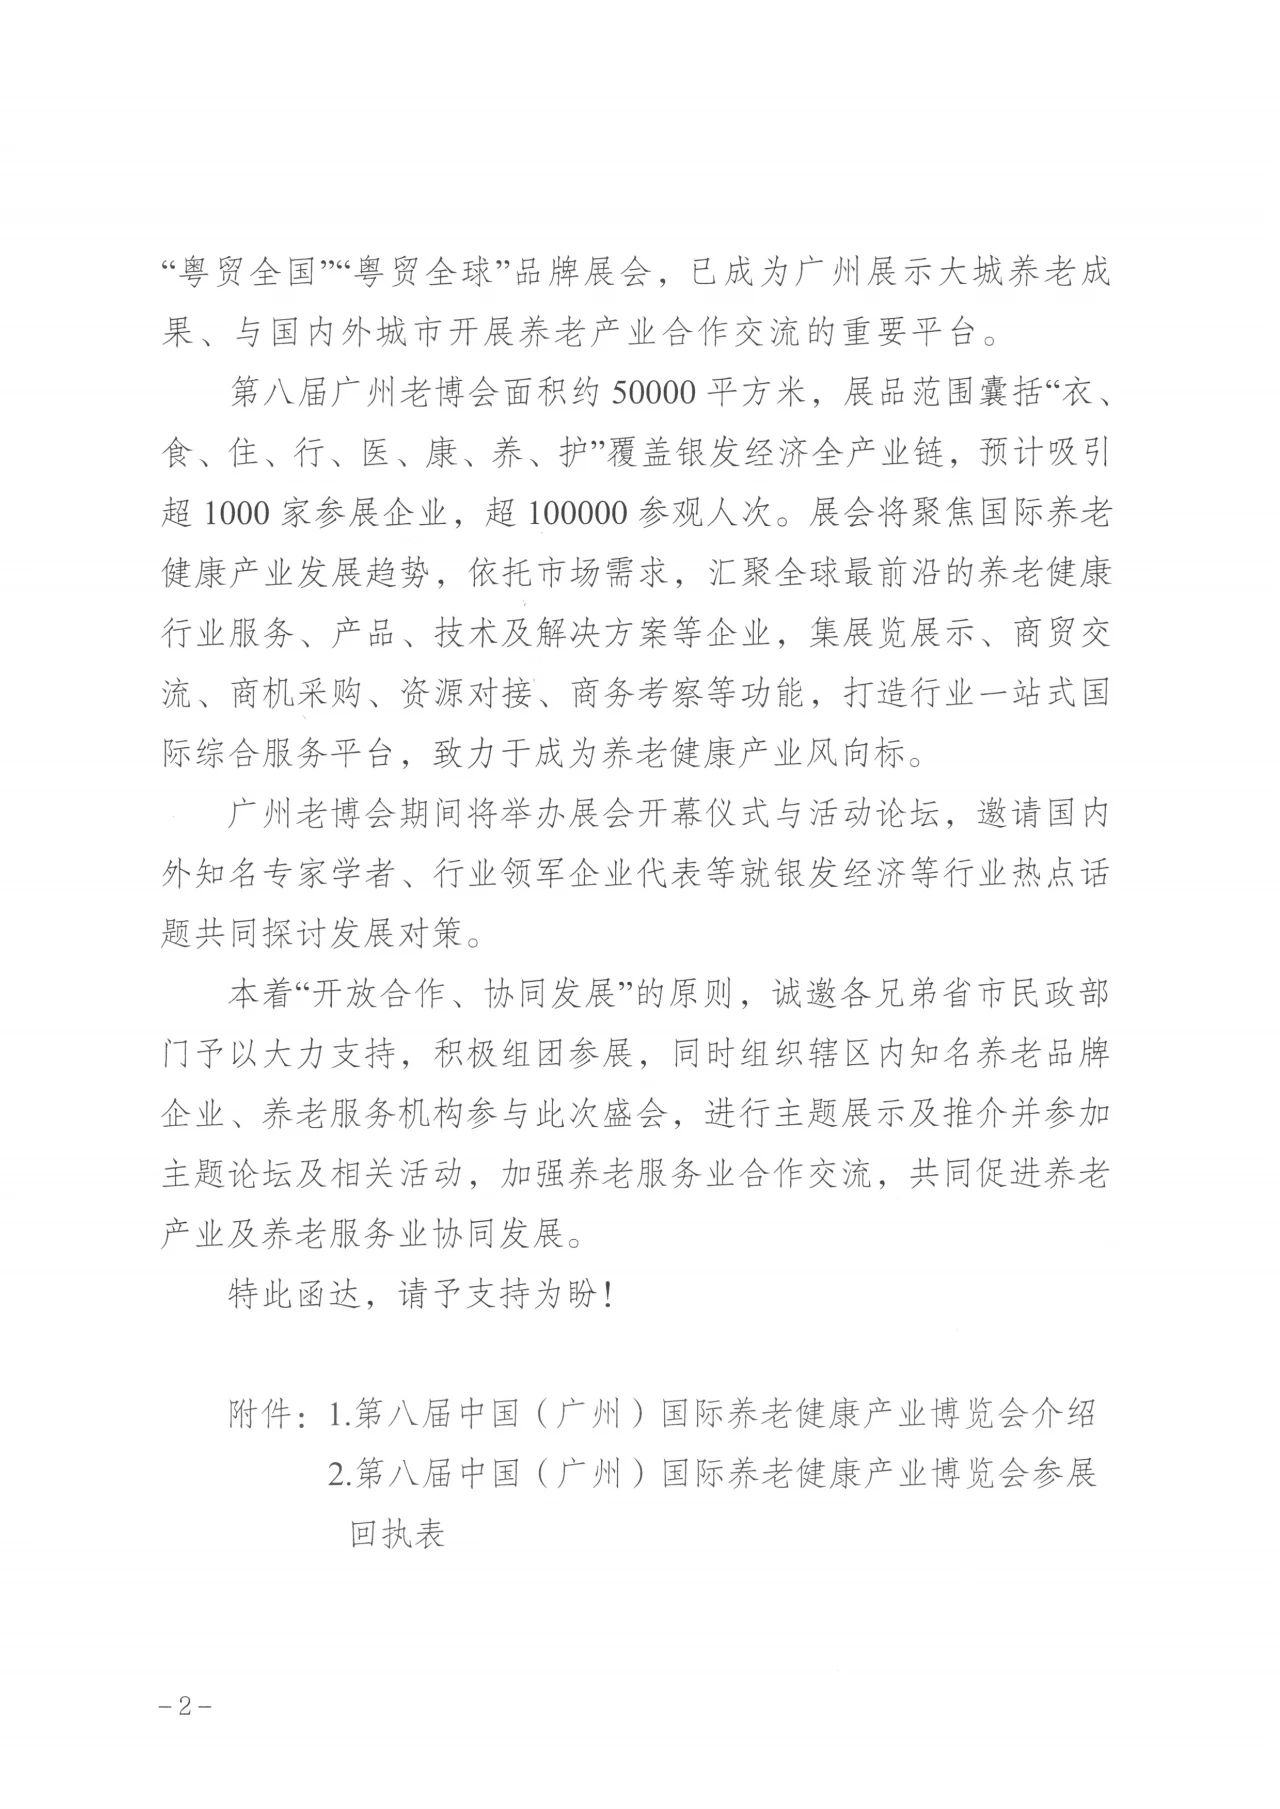 通知  广州市民政局关于邀请组织参加第八届广州老博会的函2.jpg